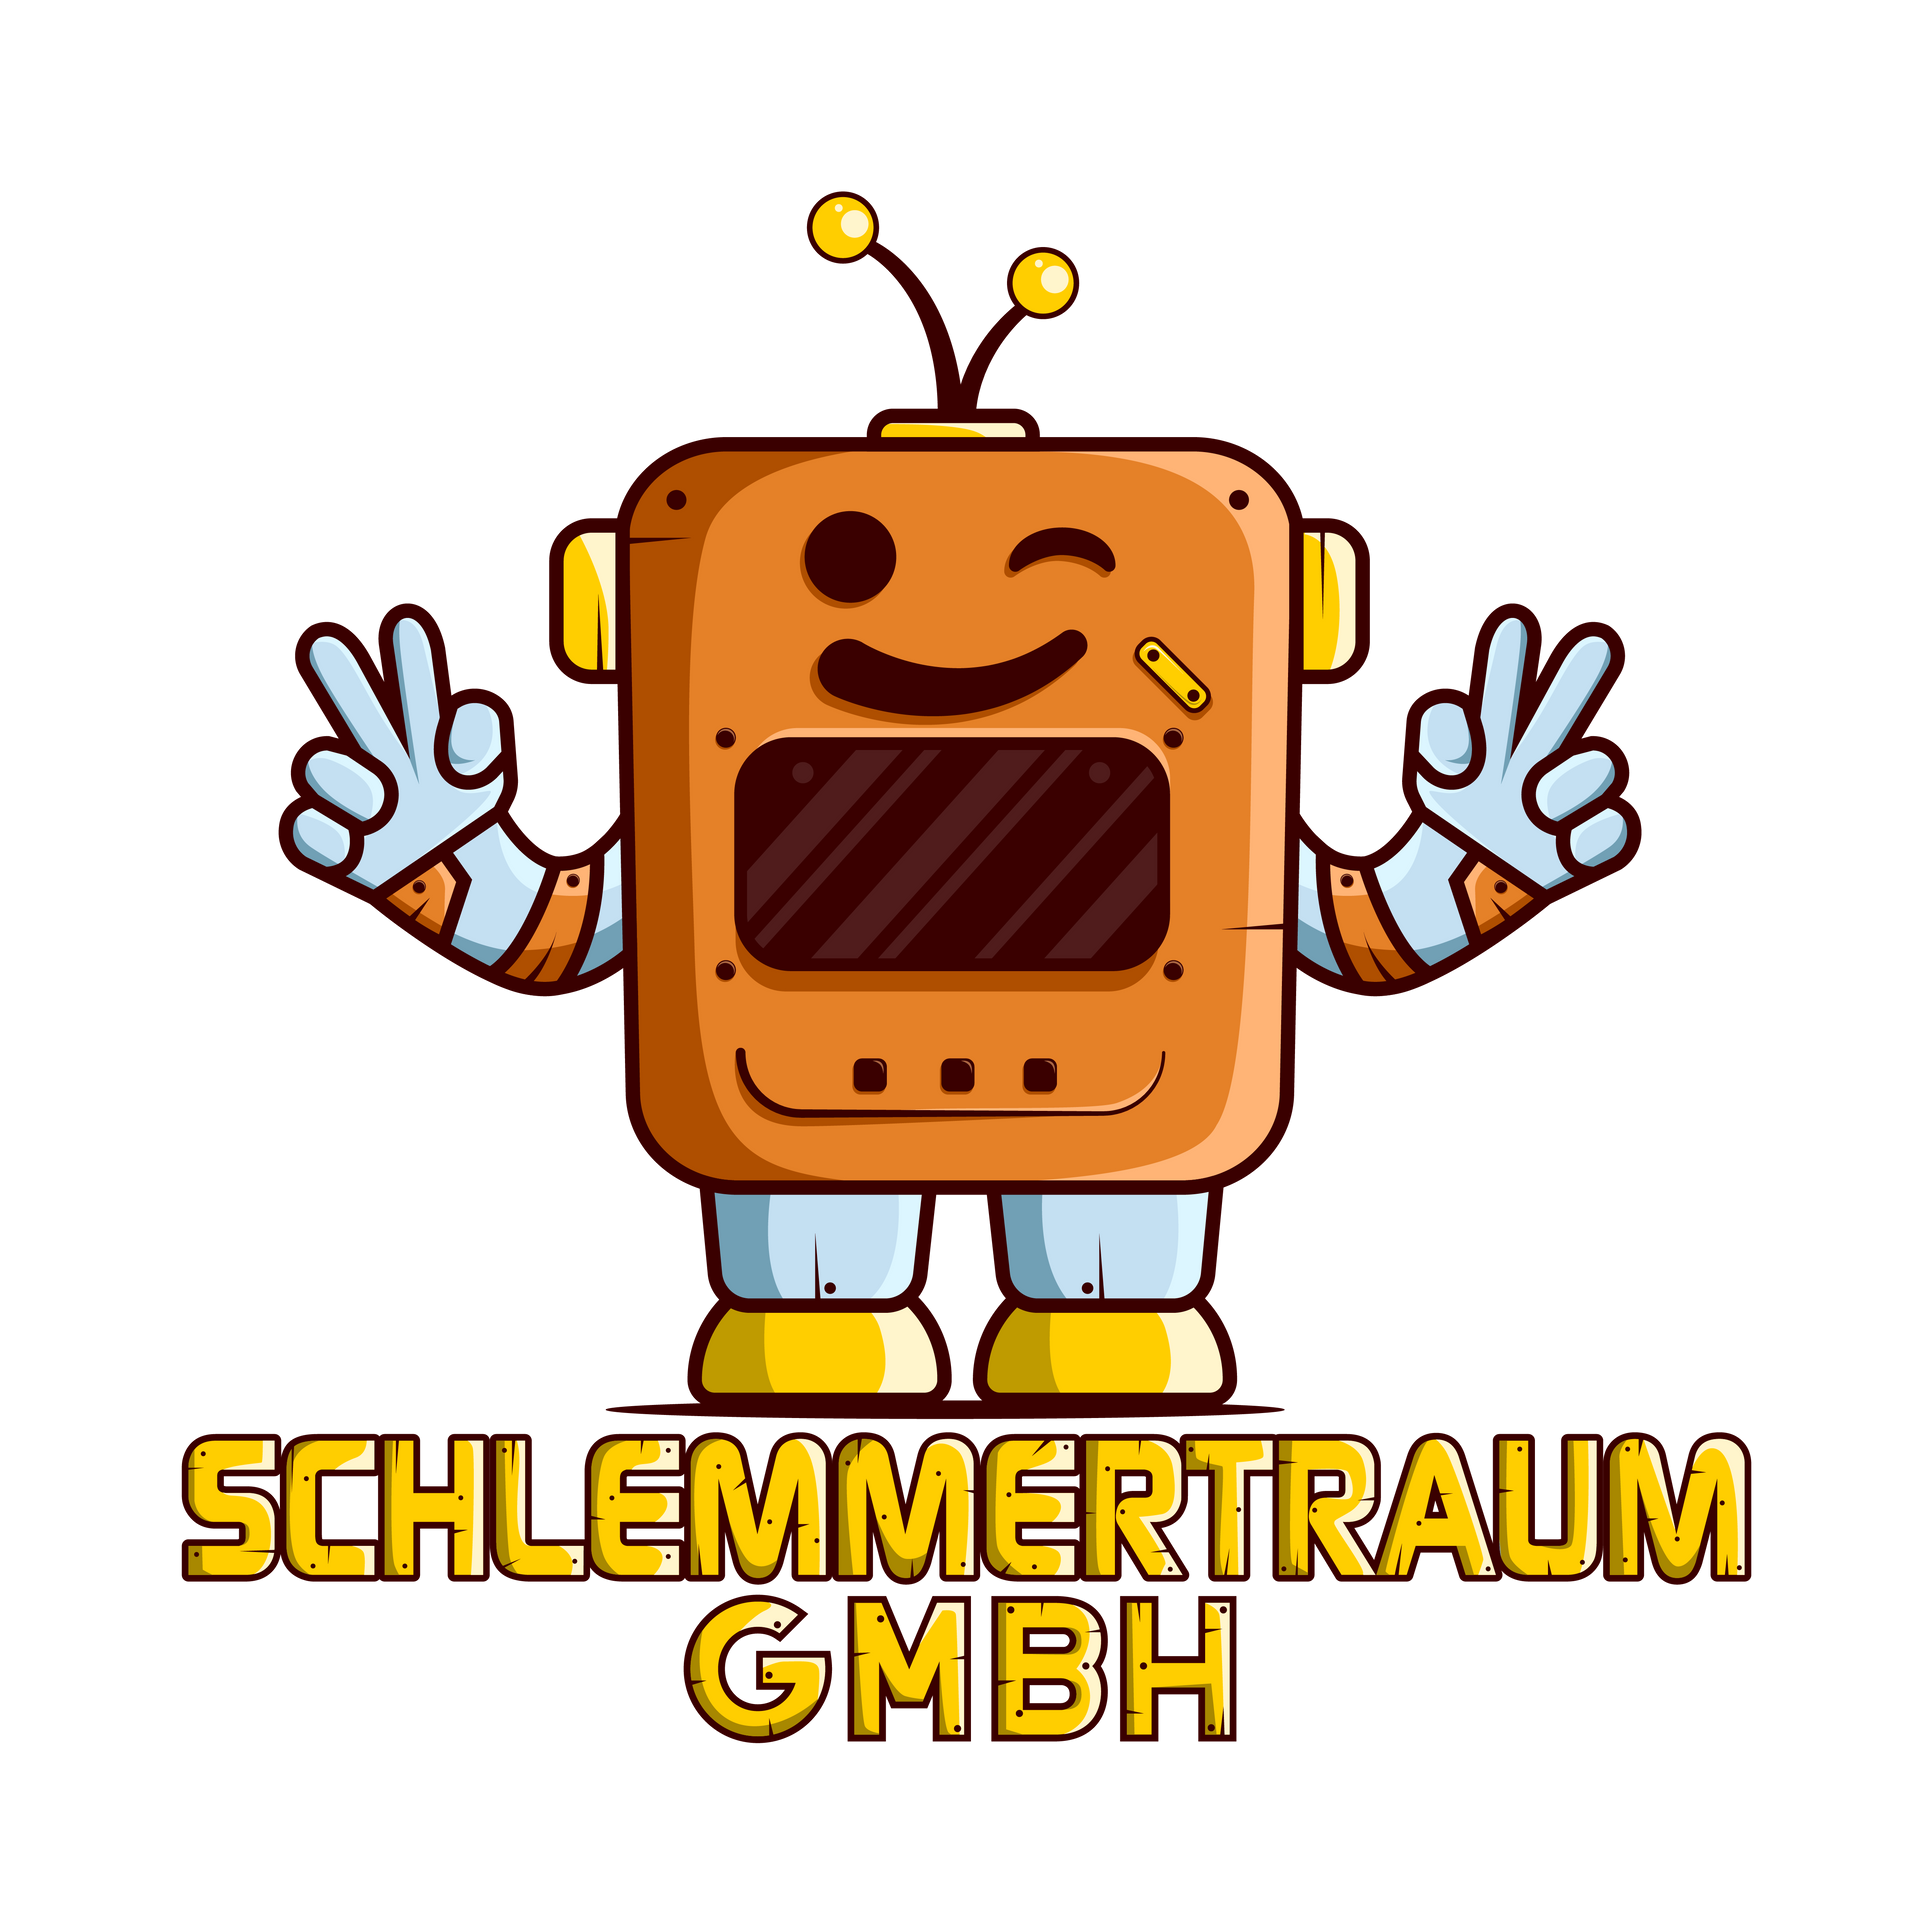 Schlemmertraum GmbH